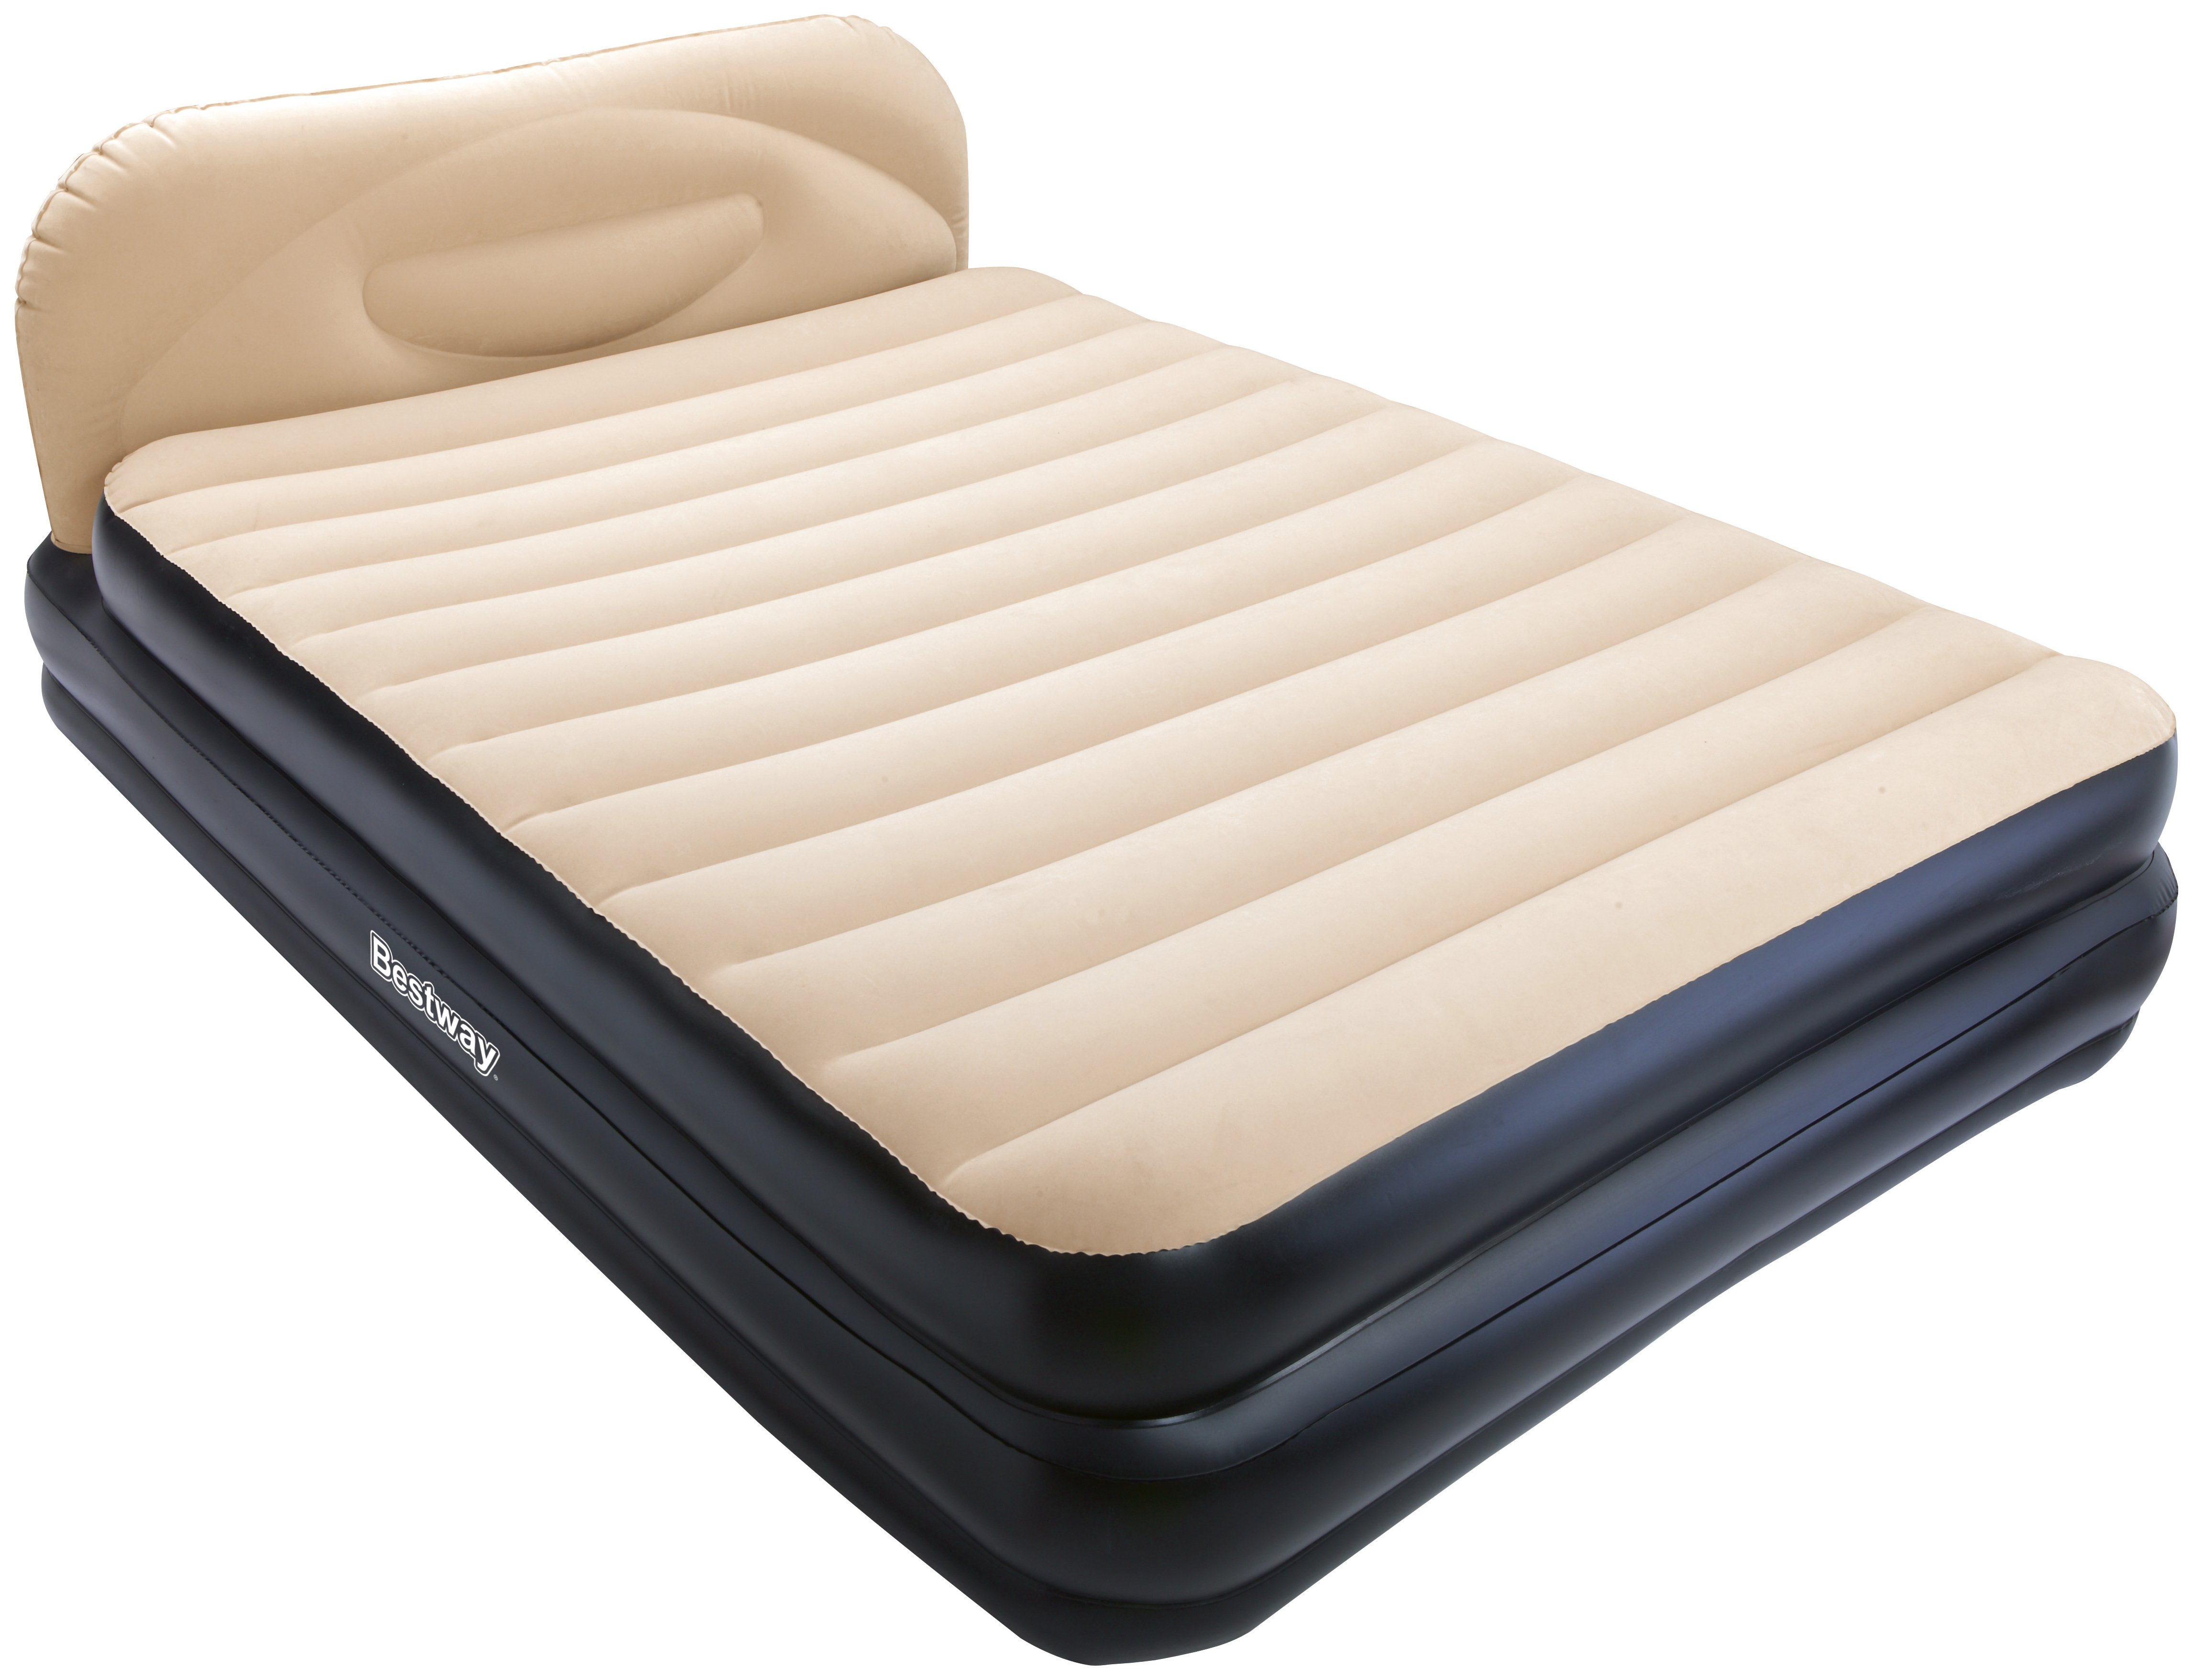 cheap air mattress online